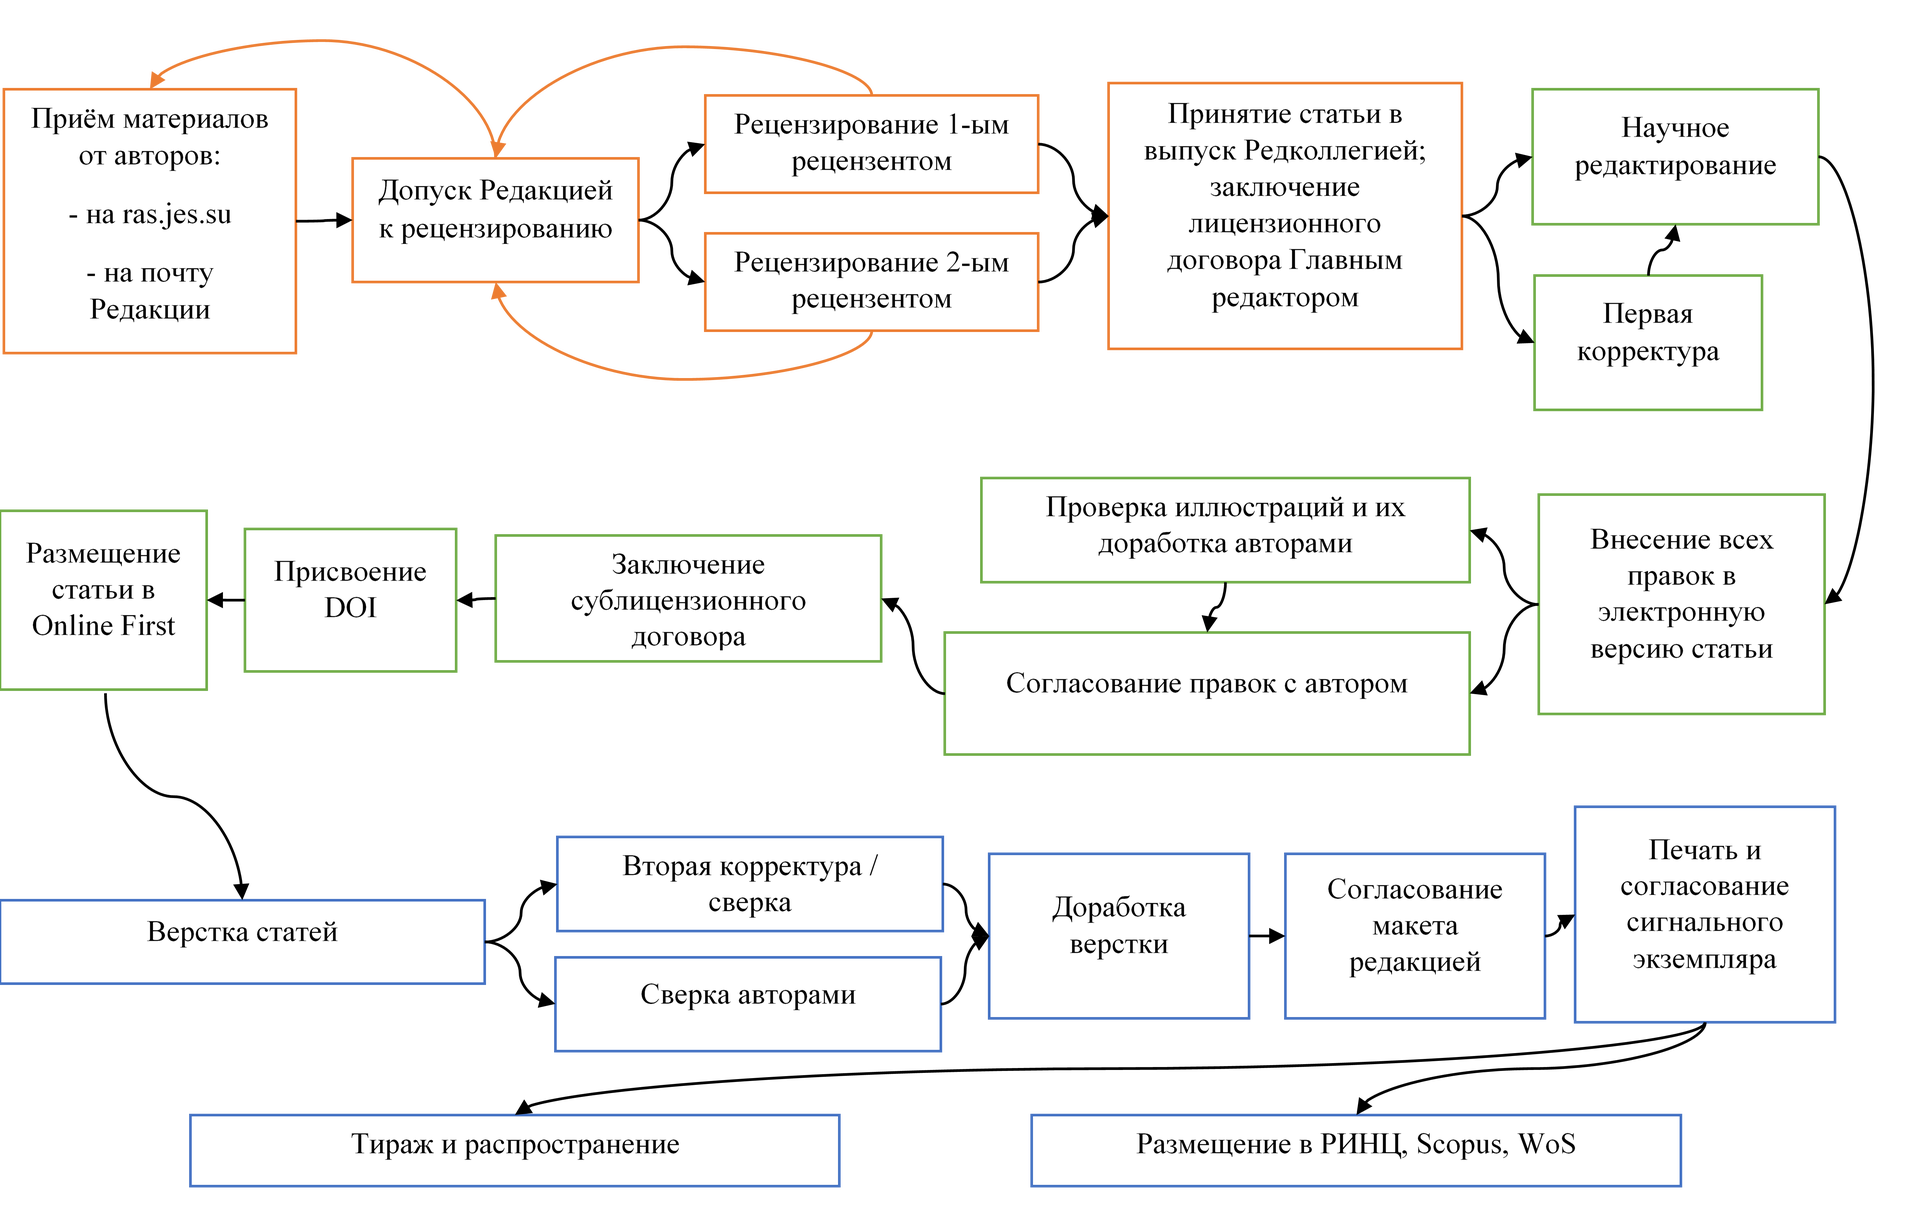 Схема полного цикла создания номера  / Изображение с сайта РАН